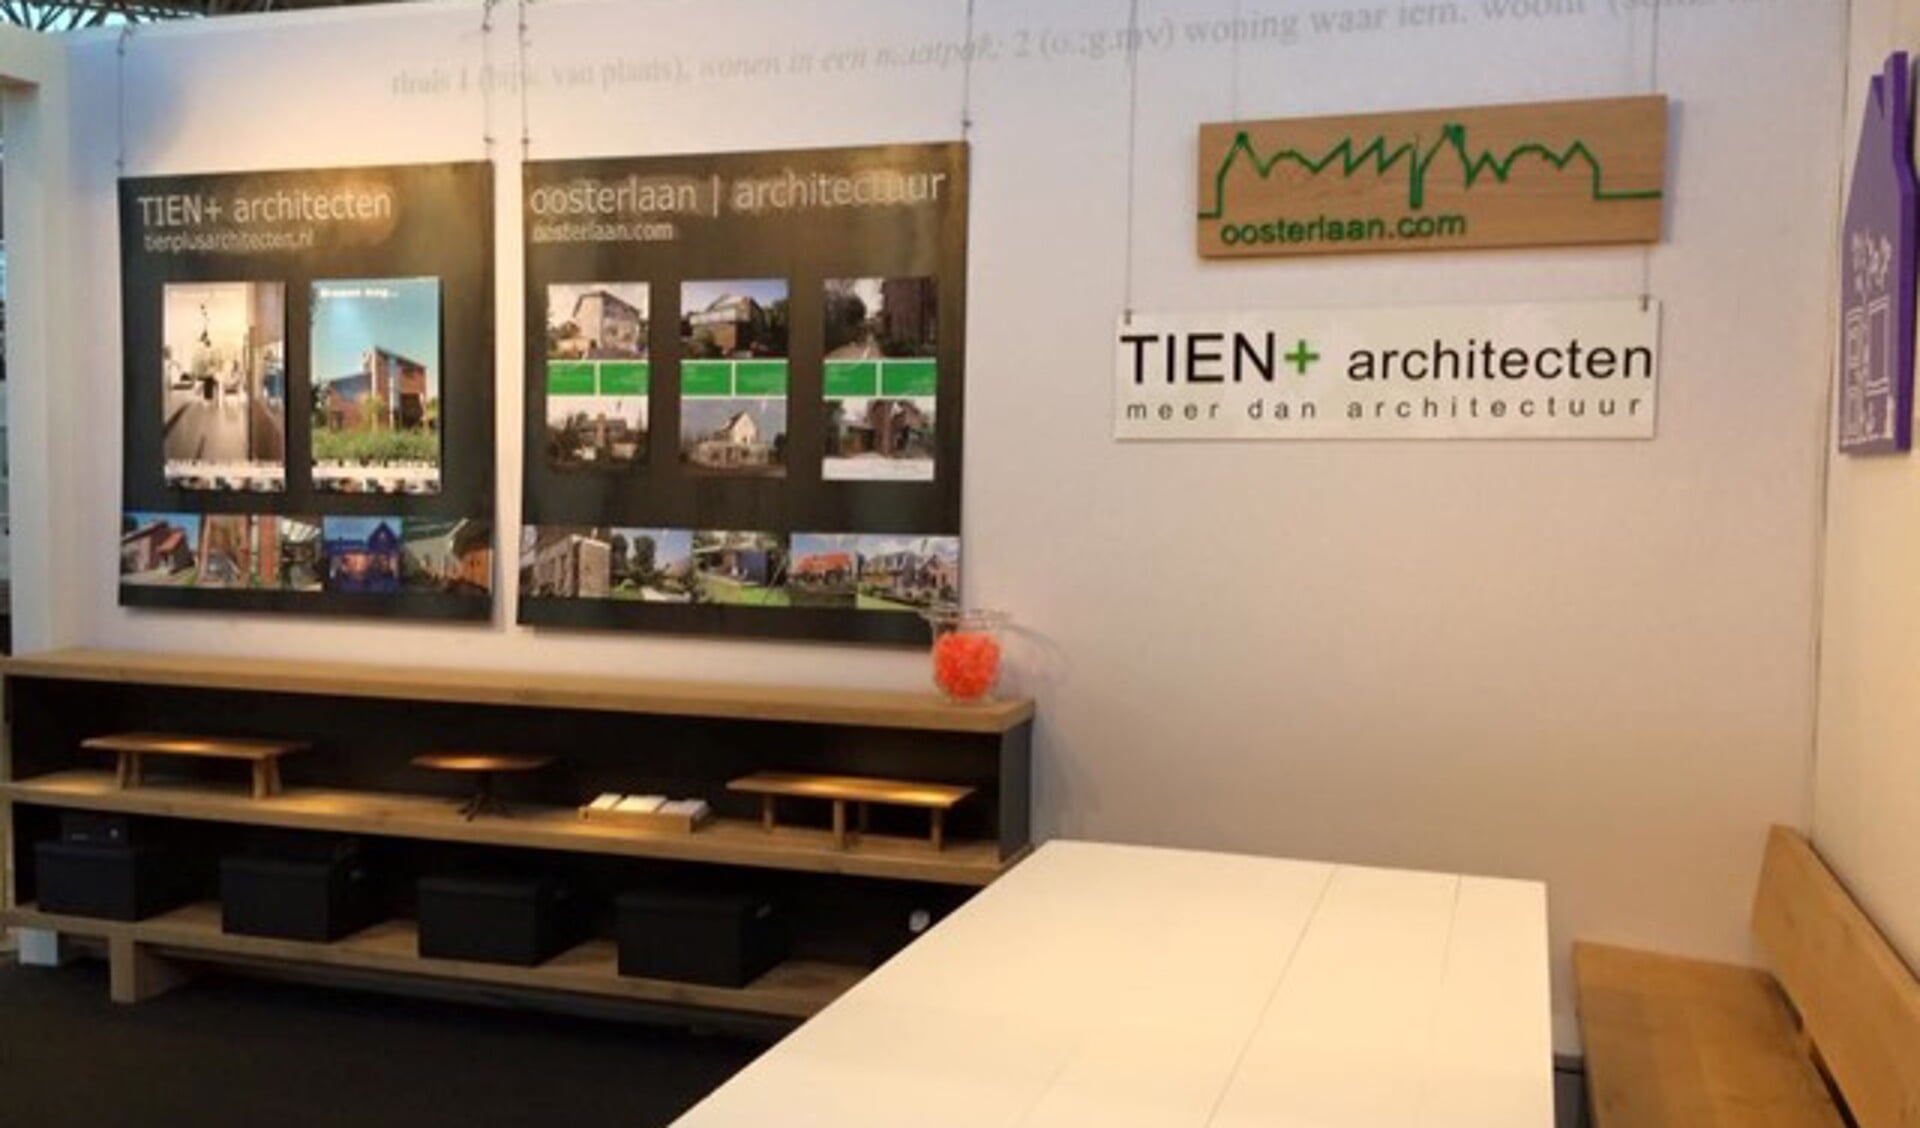 TIEN+ architecten presenteerde zich op de VT Wonen Beurs met door RODI vervaardigde borden.